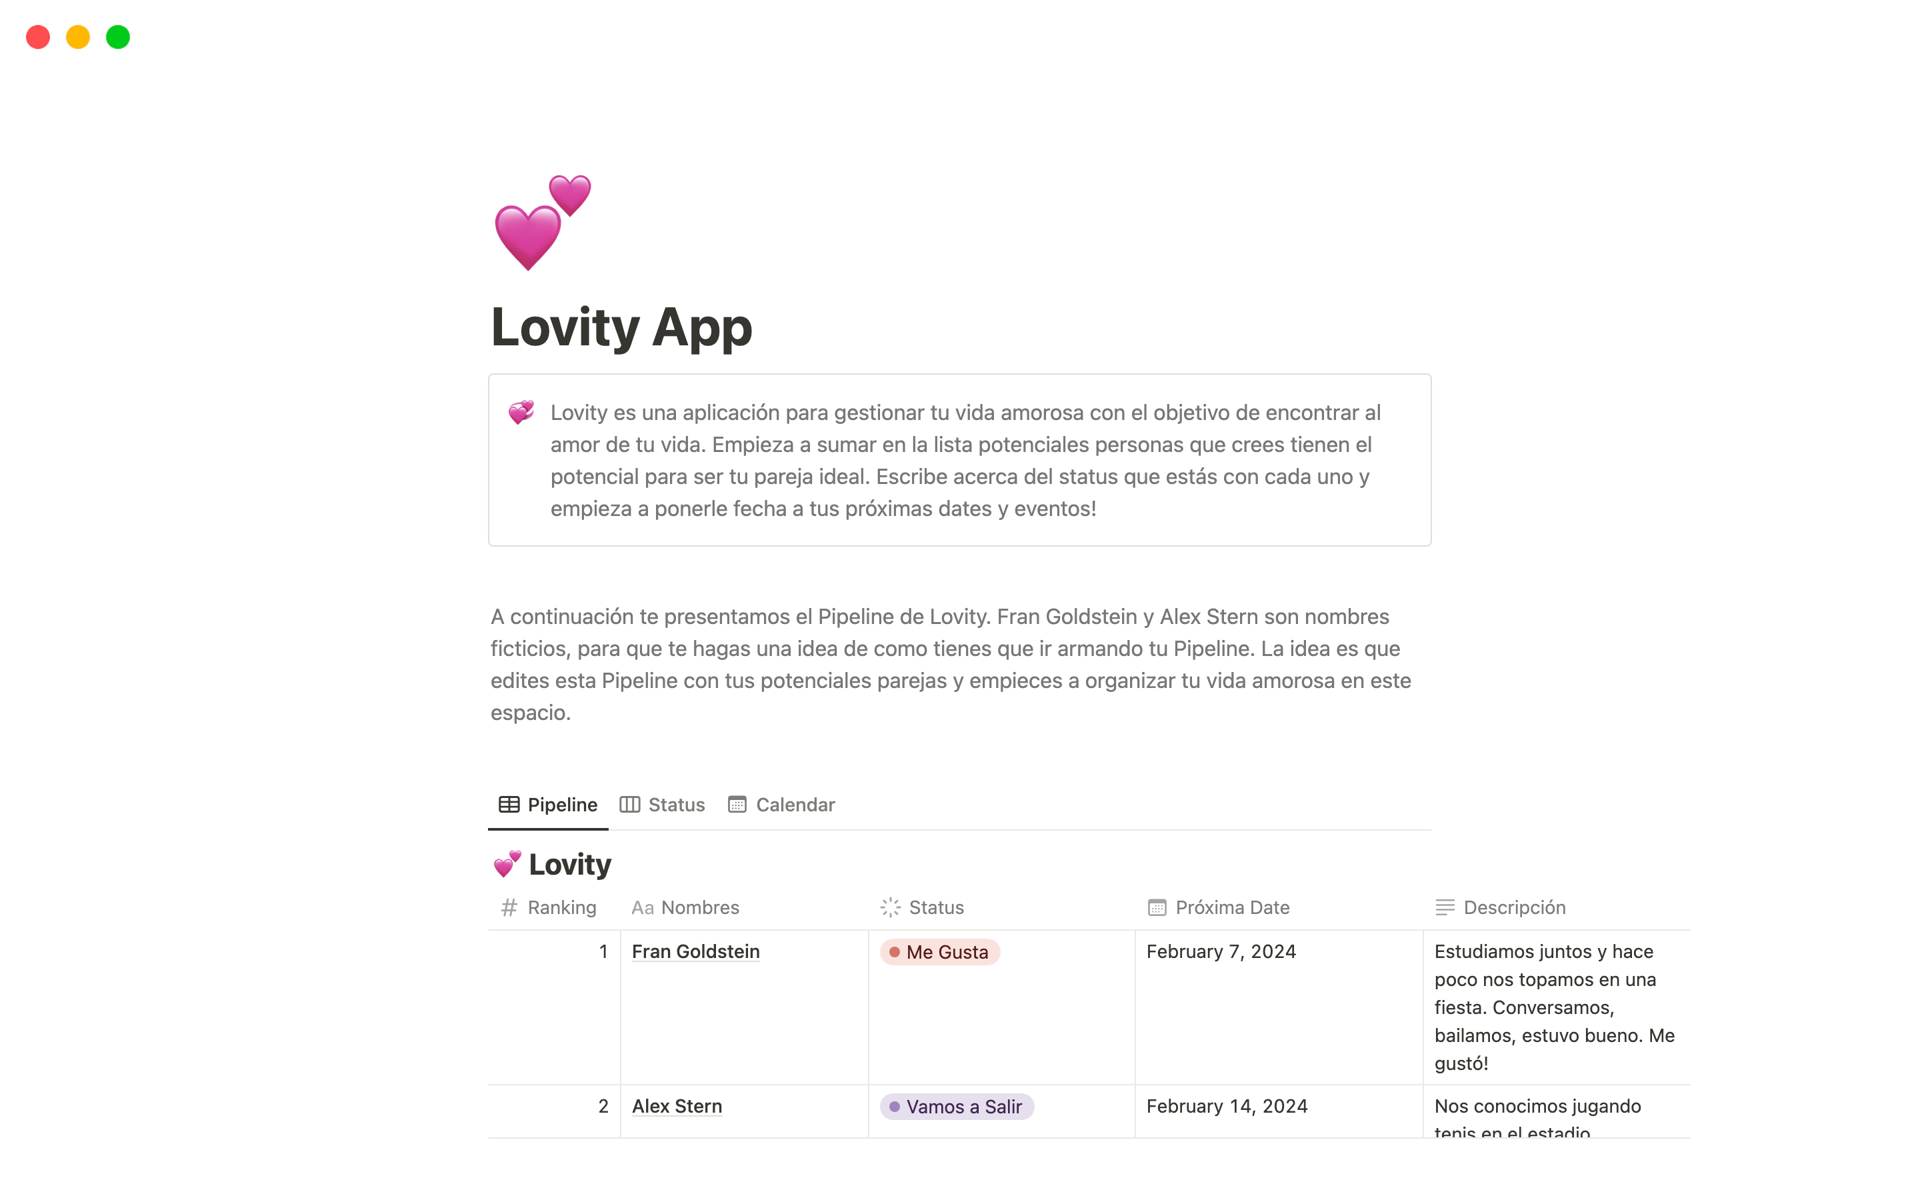 Lovity es una aplicación para gestionar tu vida amorosa con el objetivo de encontrar al amor de tu vida. 